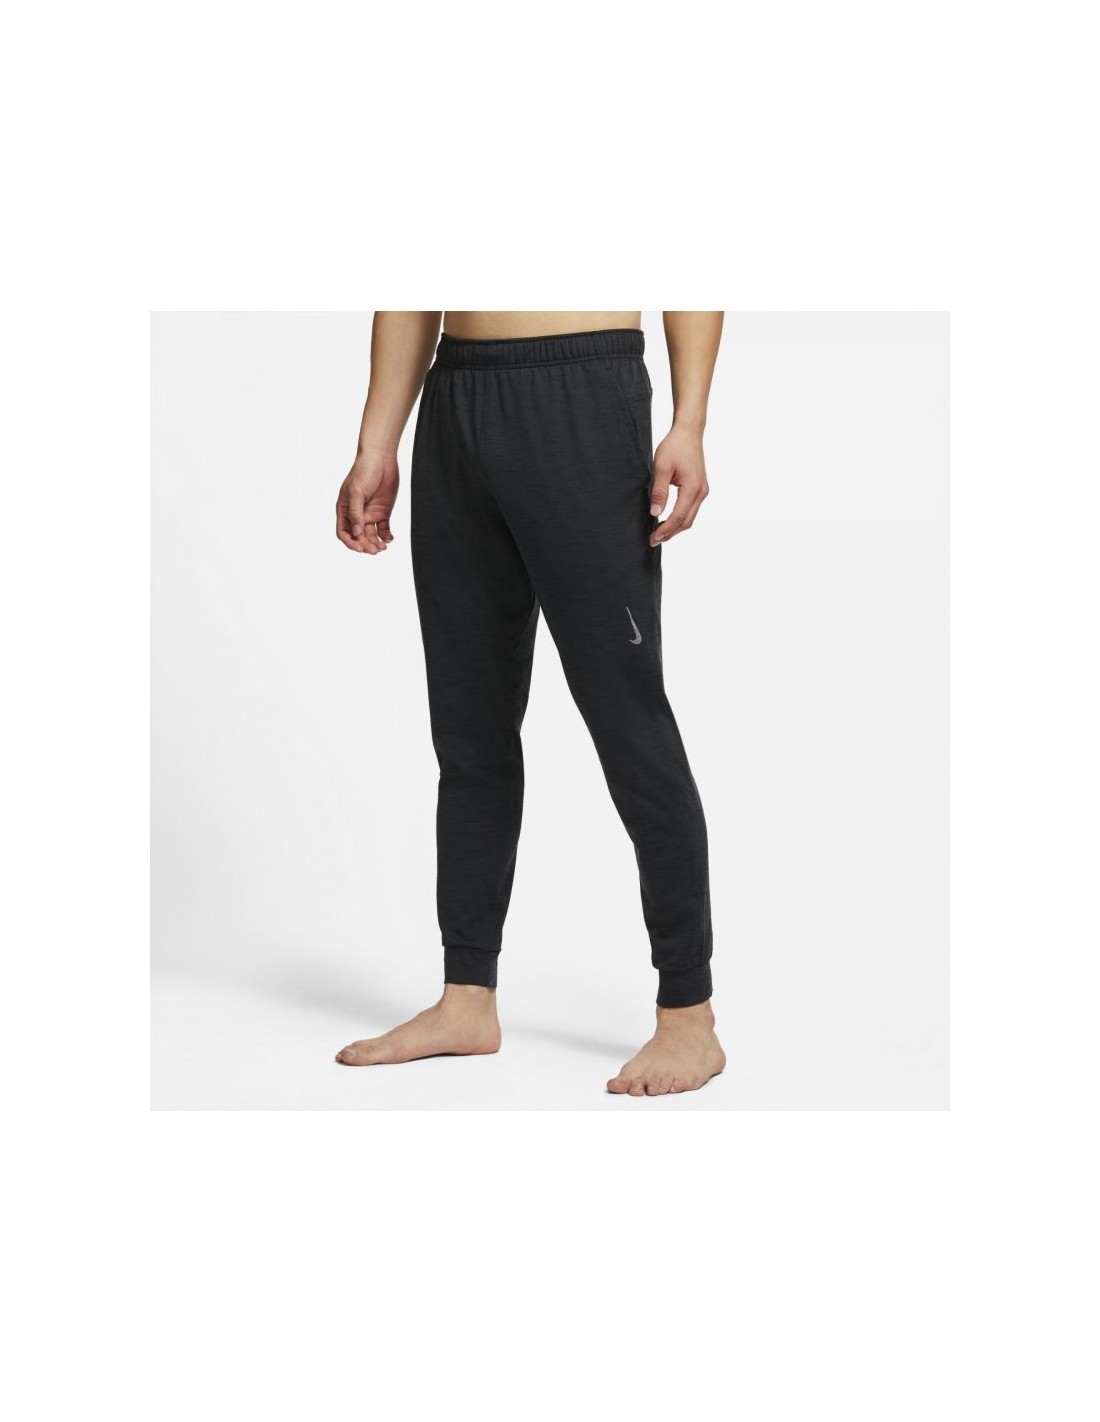 Nike Yoga Dri-FIT Pant CZ2208-010 Black Men Size X-Large